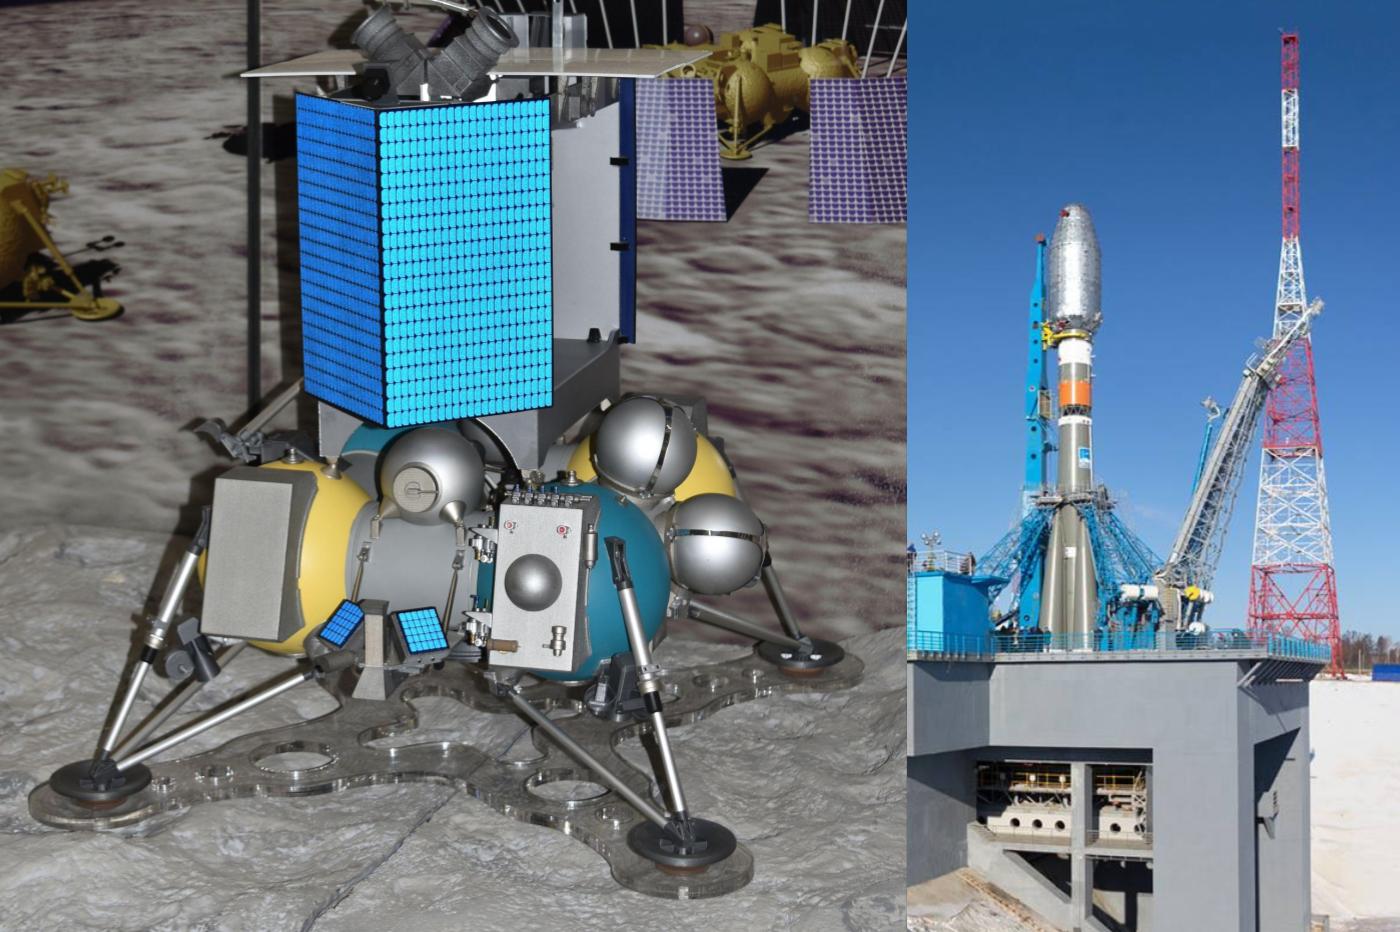 Une maquette de l'alunisseur de la mission Luna 25 et une photo d'un Soyouz (à g.) au cosmodrome de Vostochny (à d.)